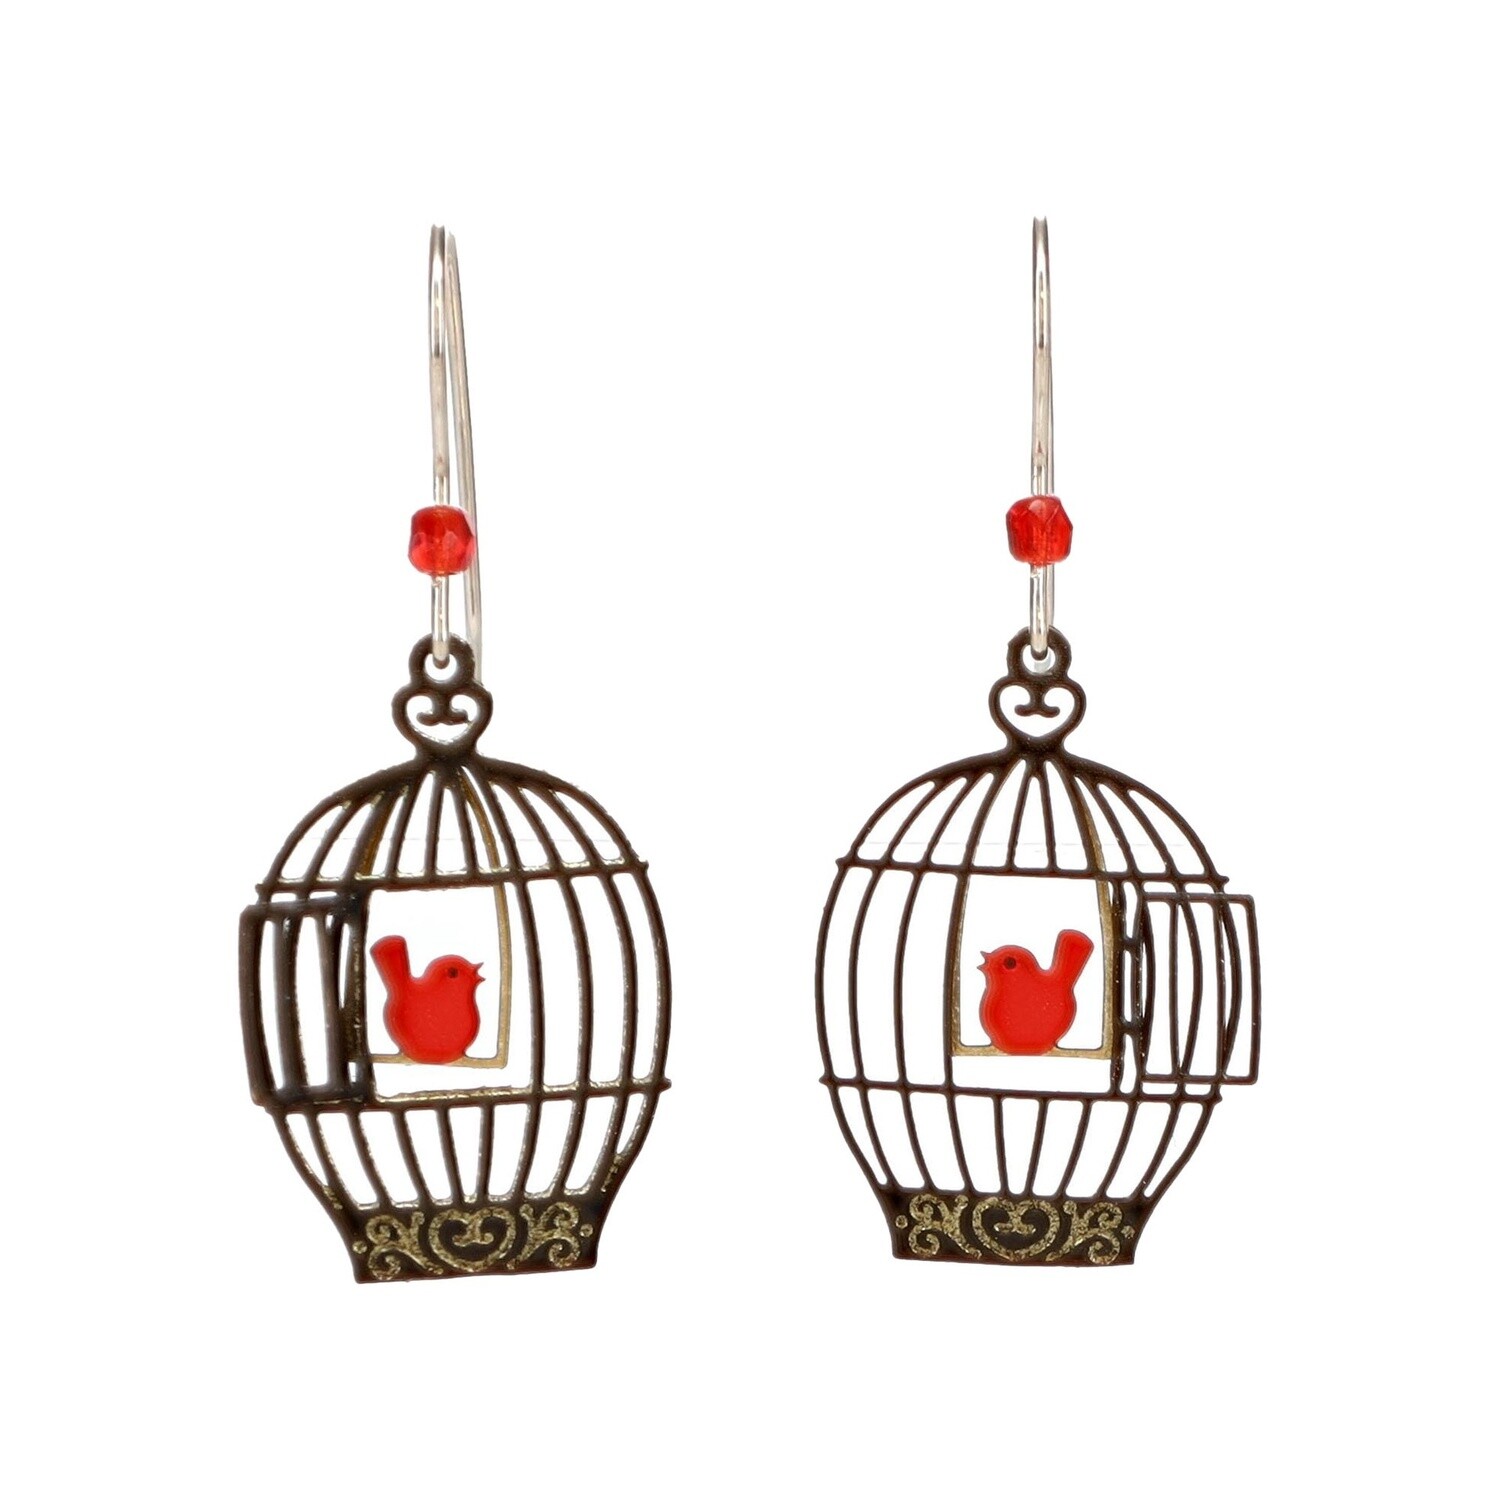 Open Bird Cage w/ Red Birds